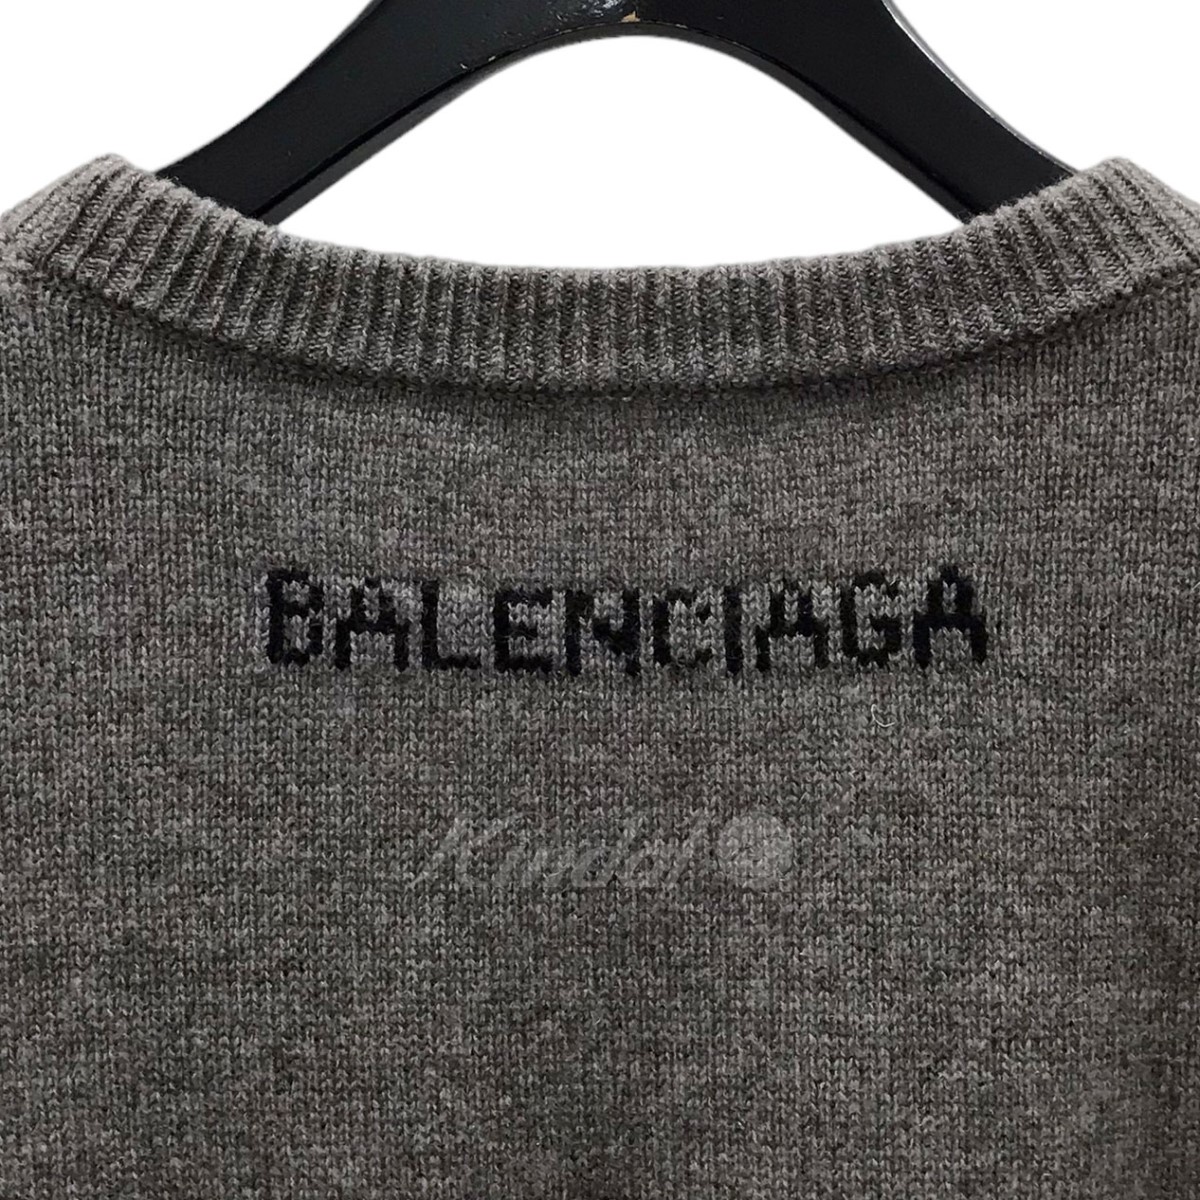 激安単価で】 Balenciaga - バレンシアガ カシミヤ XS グレー メンズ